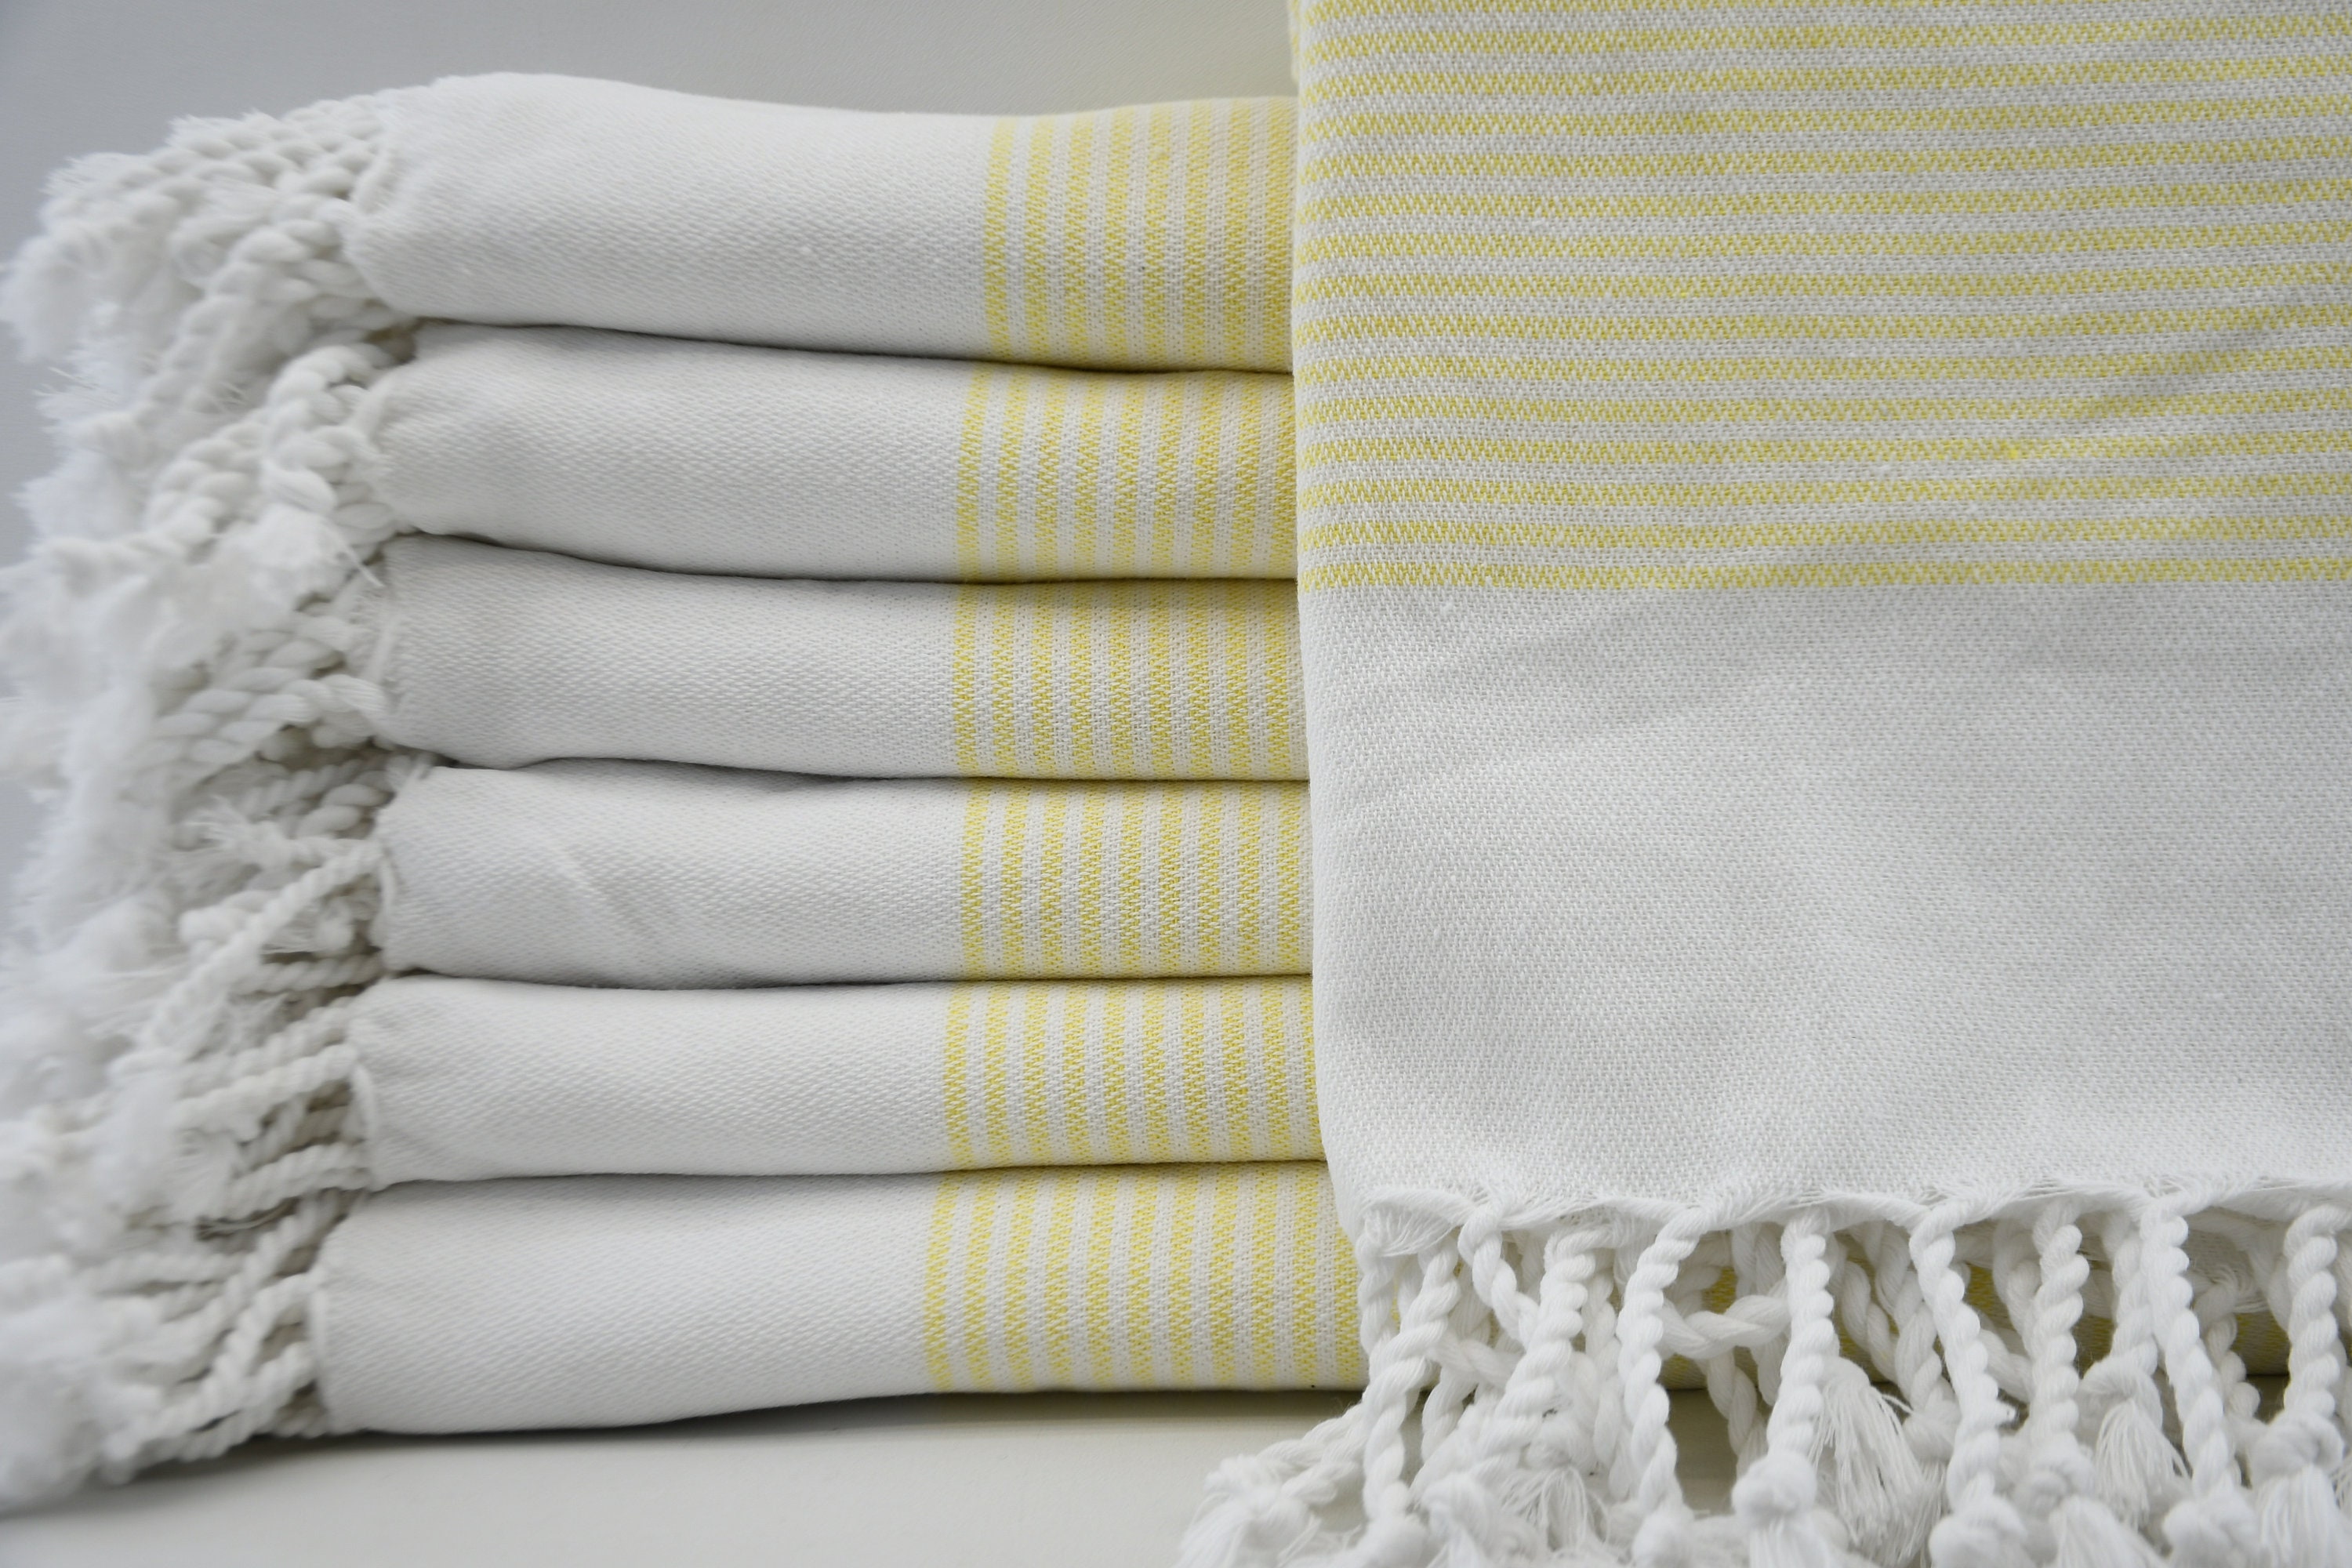 Kitchen Towel,Turkih Hand Towel,Mint Green Hand Towel ,Tea Towel,Face Towel ,18x40,Dish Towel,Head Towel,Peshkir,Turkish Towel,B2-sultanH